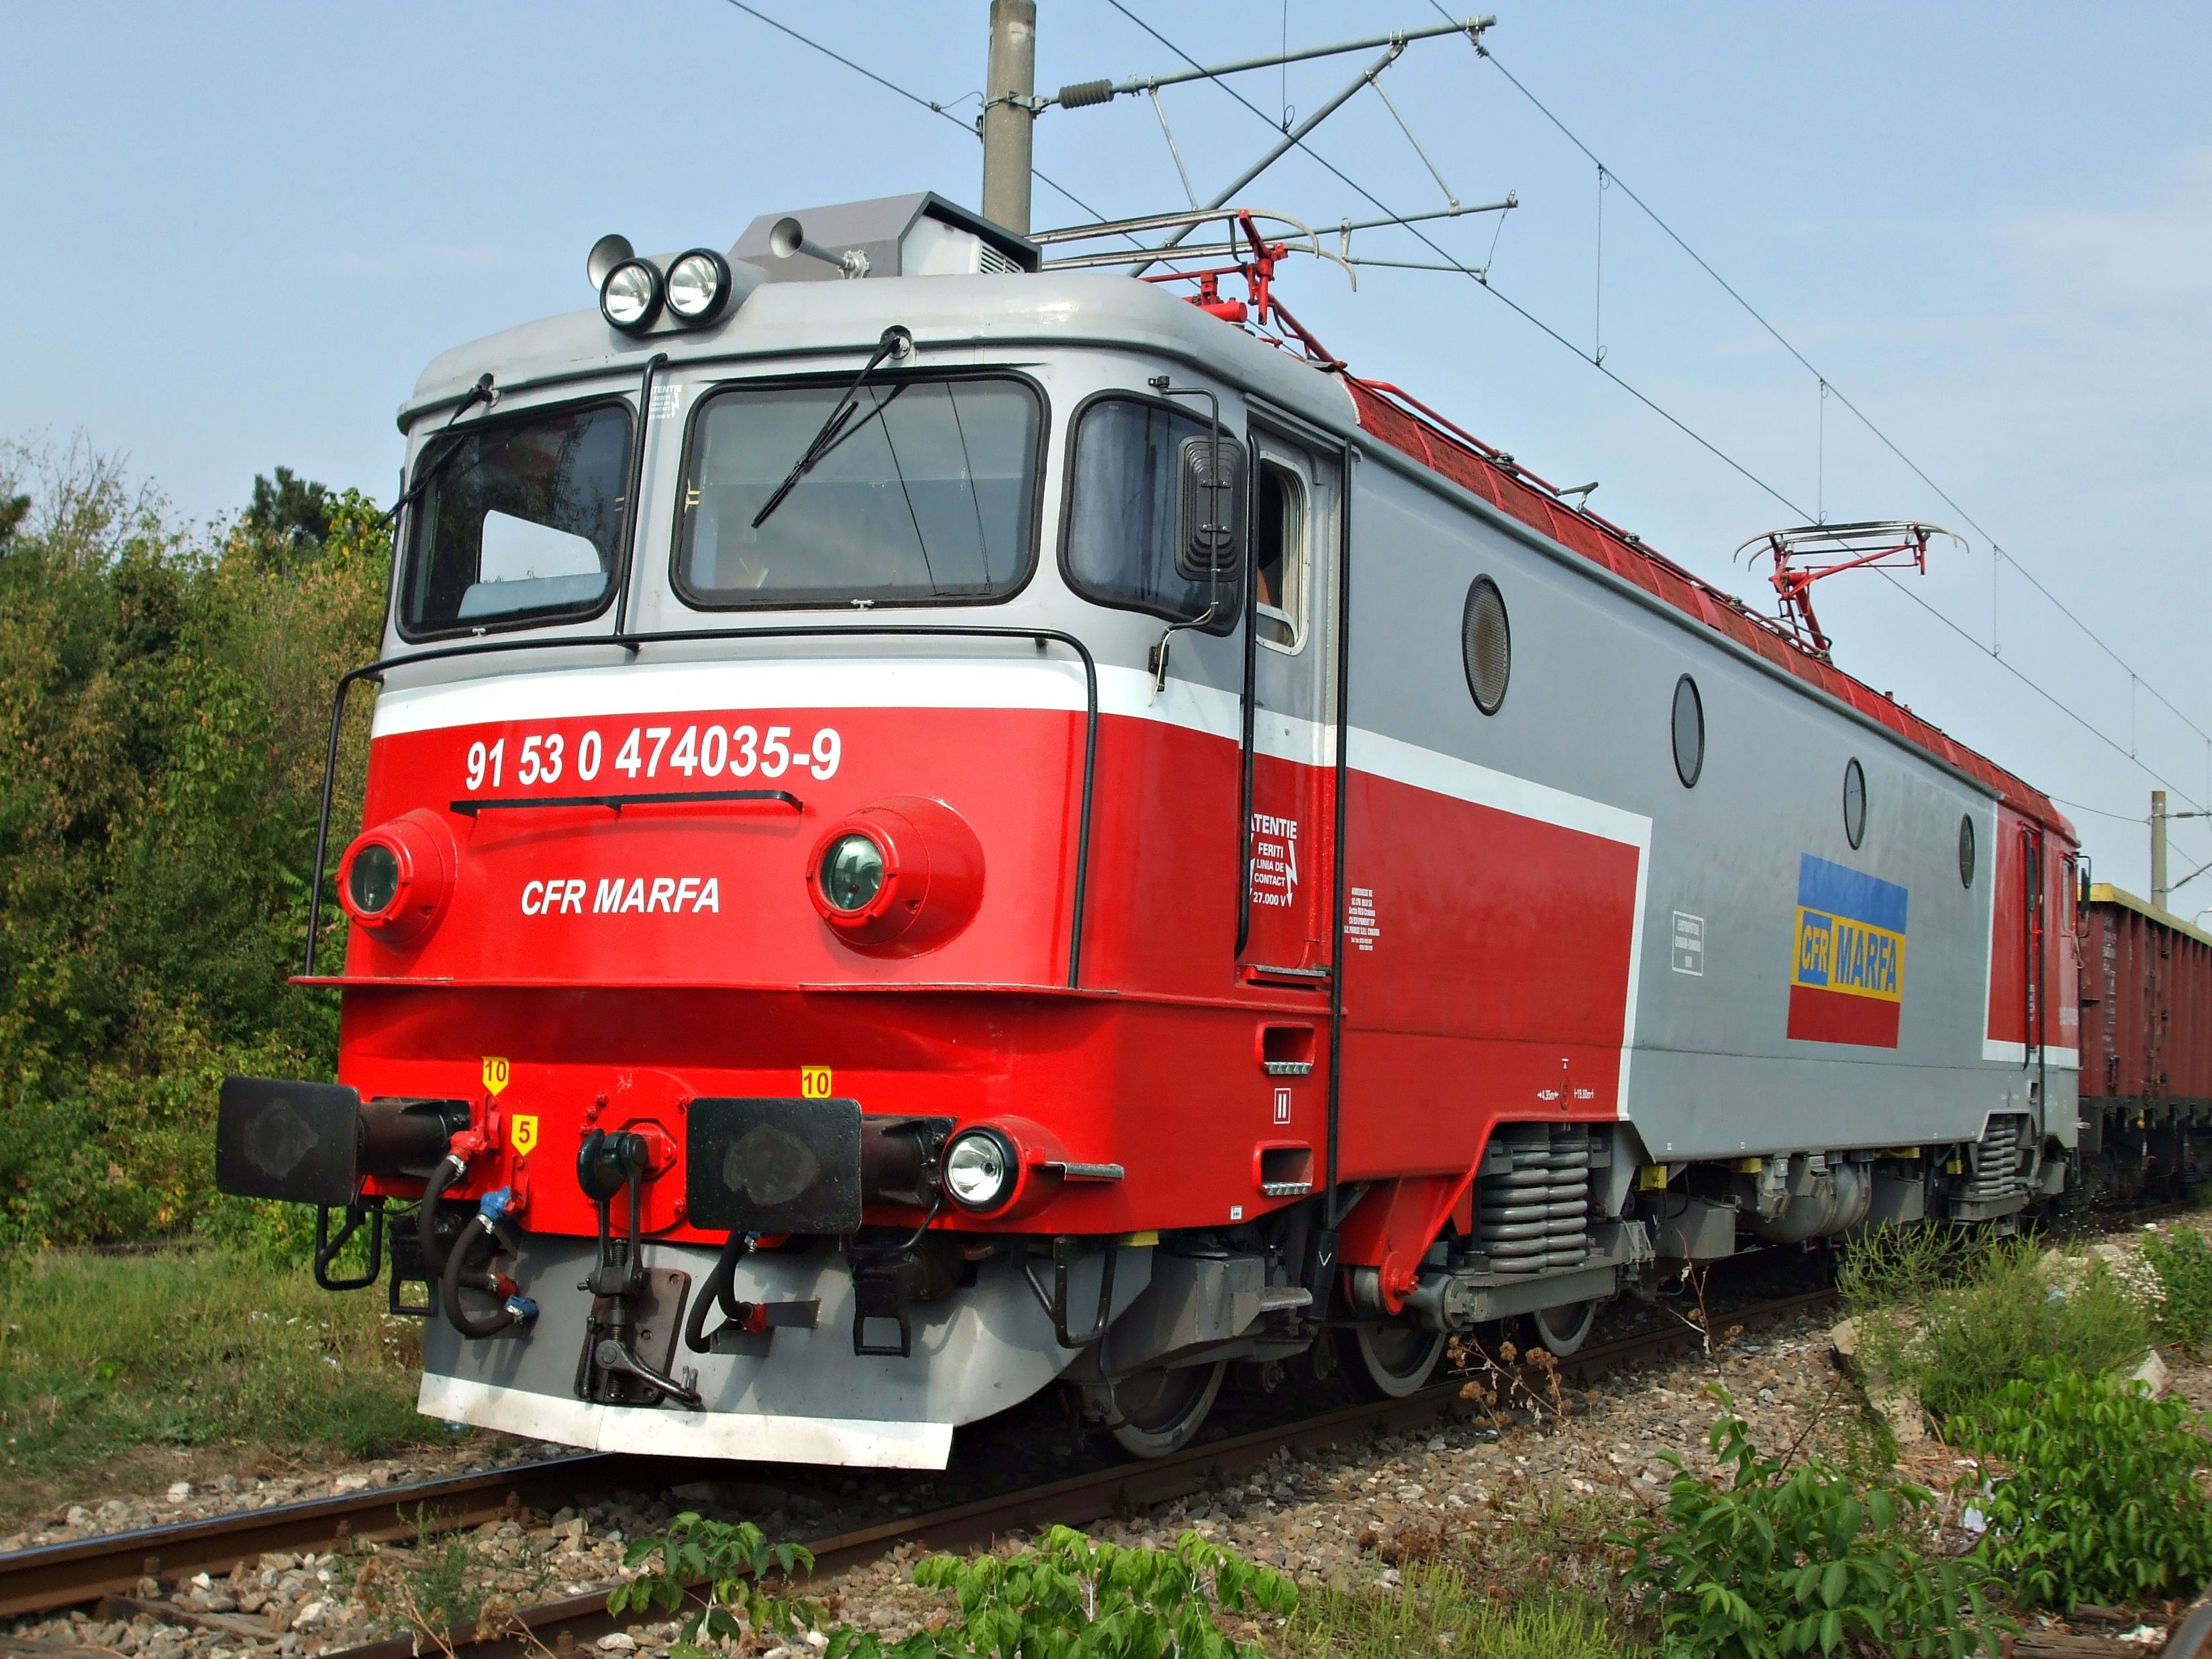 【电力机车科普】6g1型电力机车的原型——罗马尼亚铁路060 ea型电力